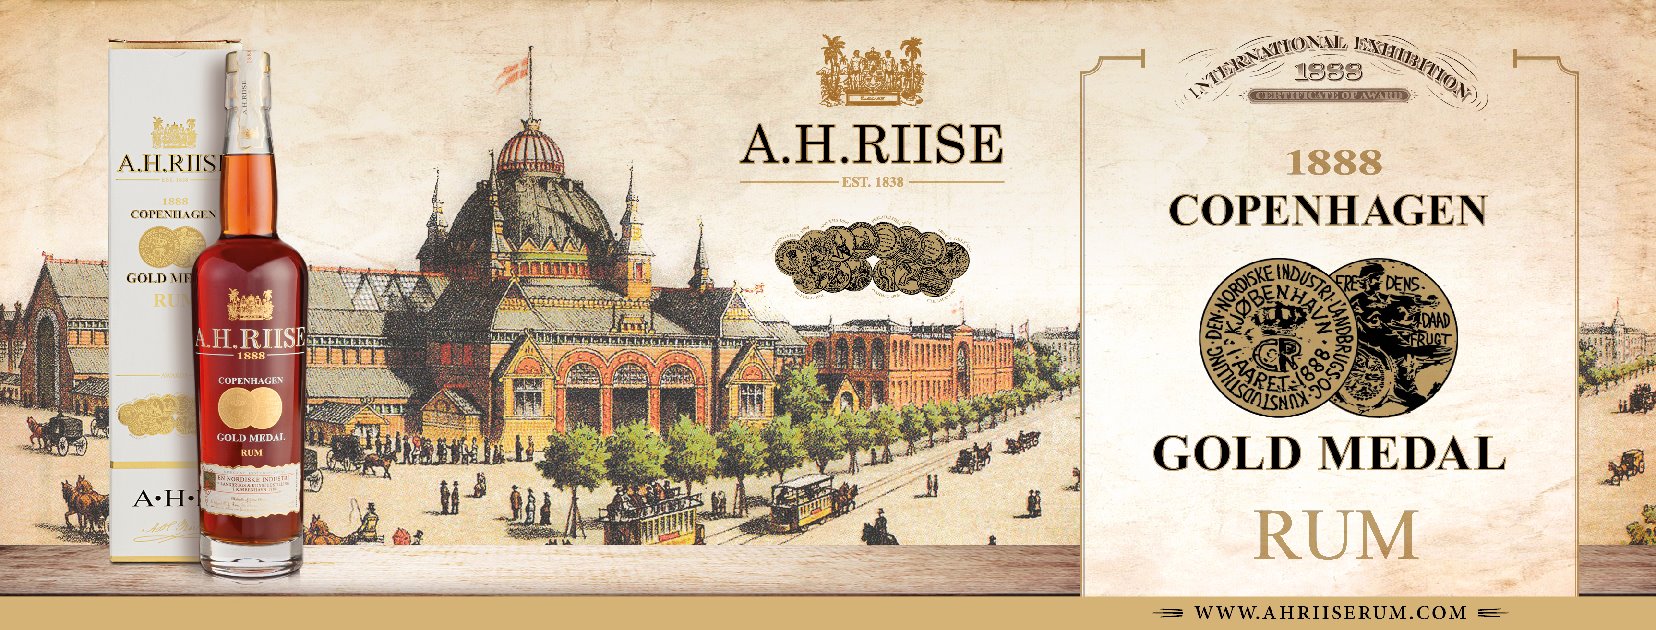 A.H. Riise 1888 copenhagen gold medal